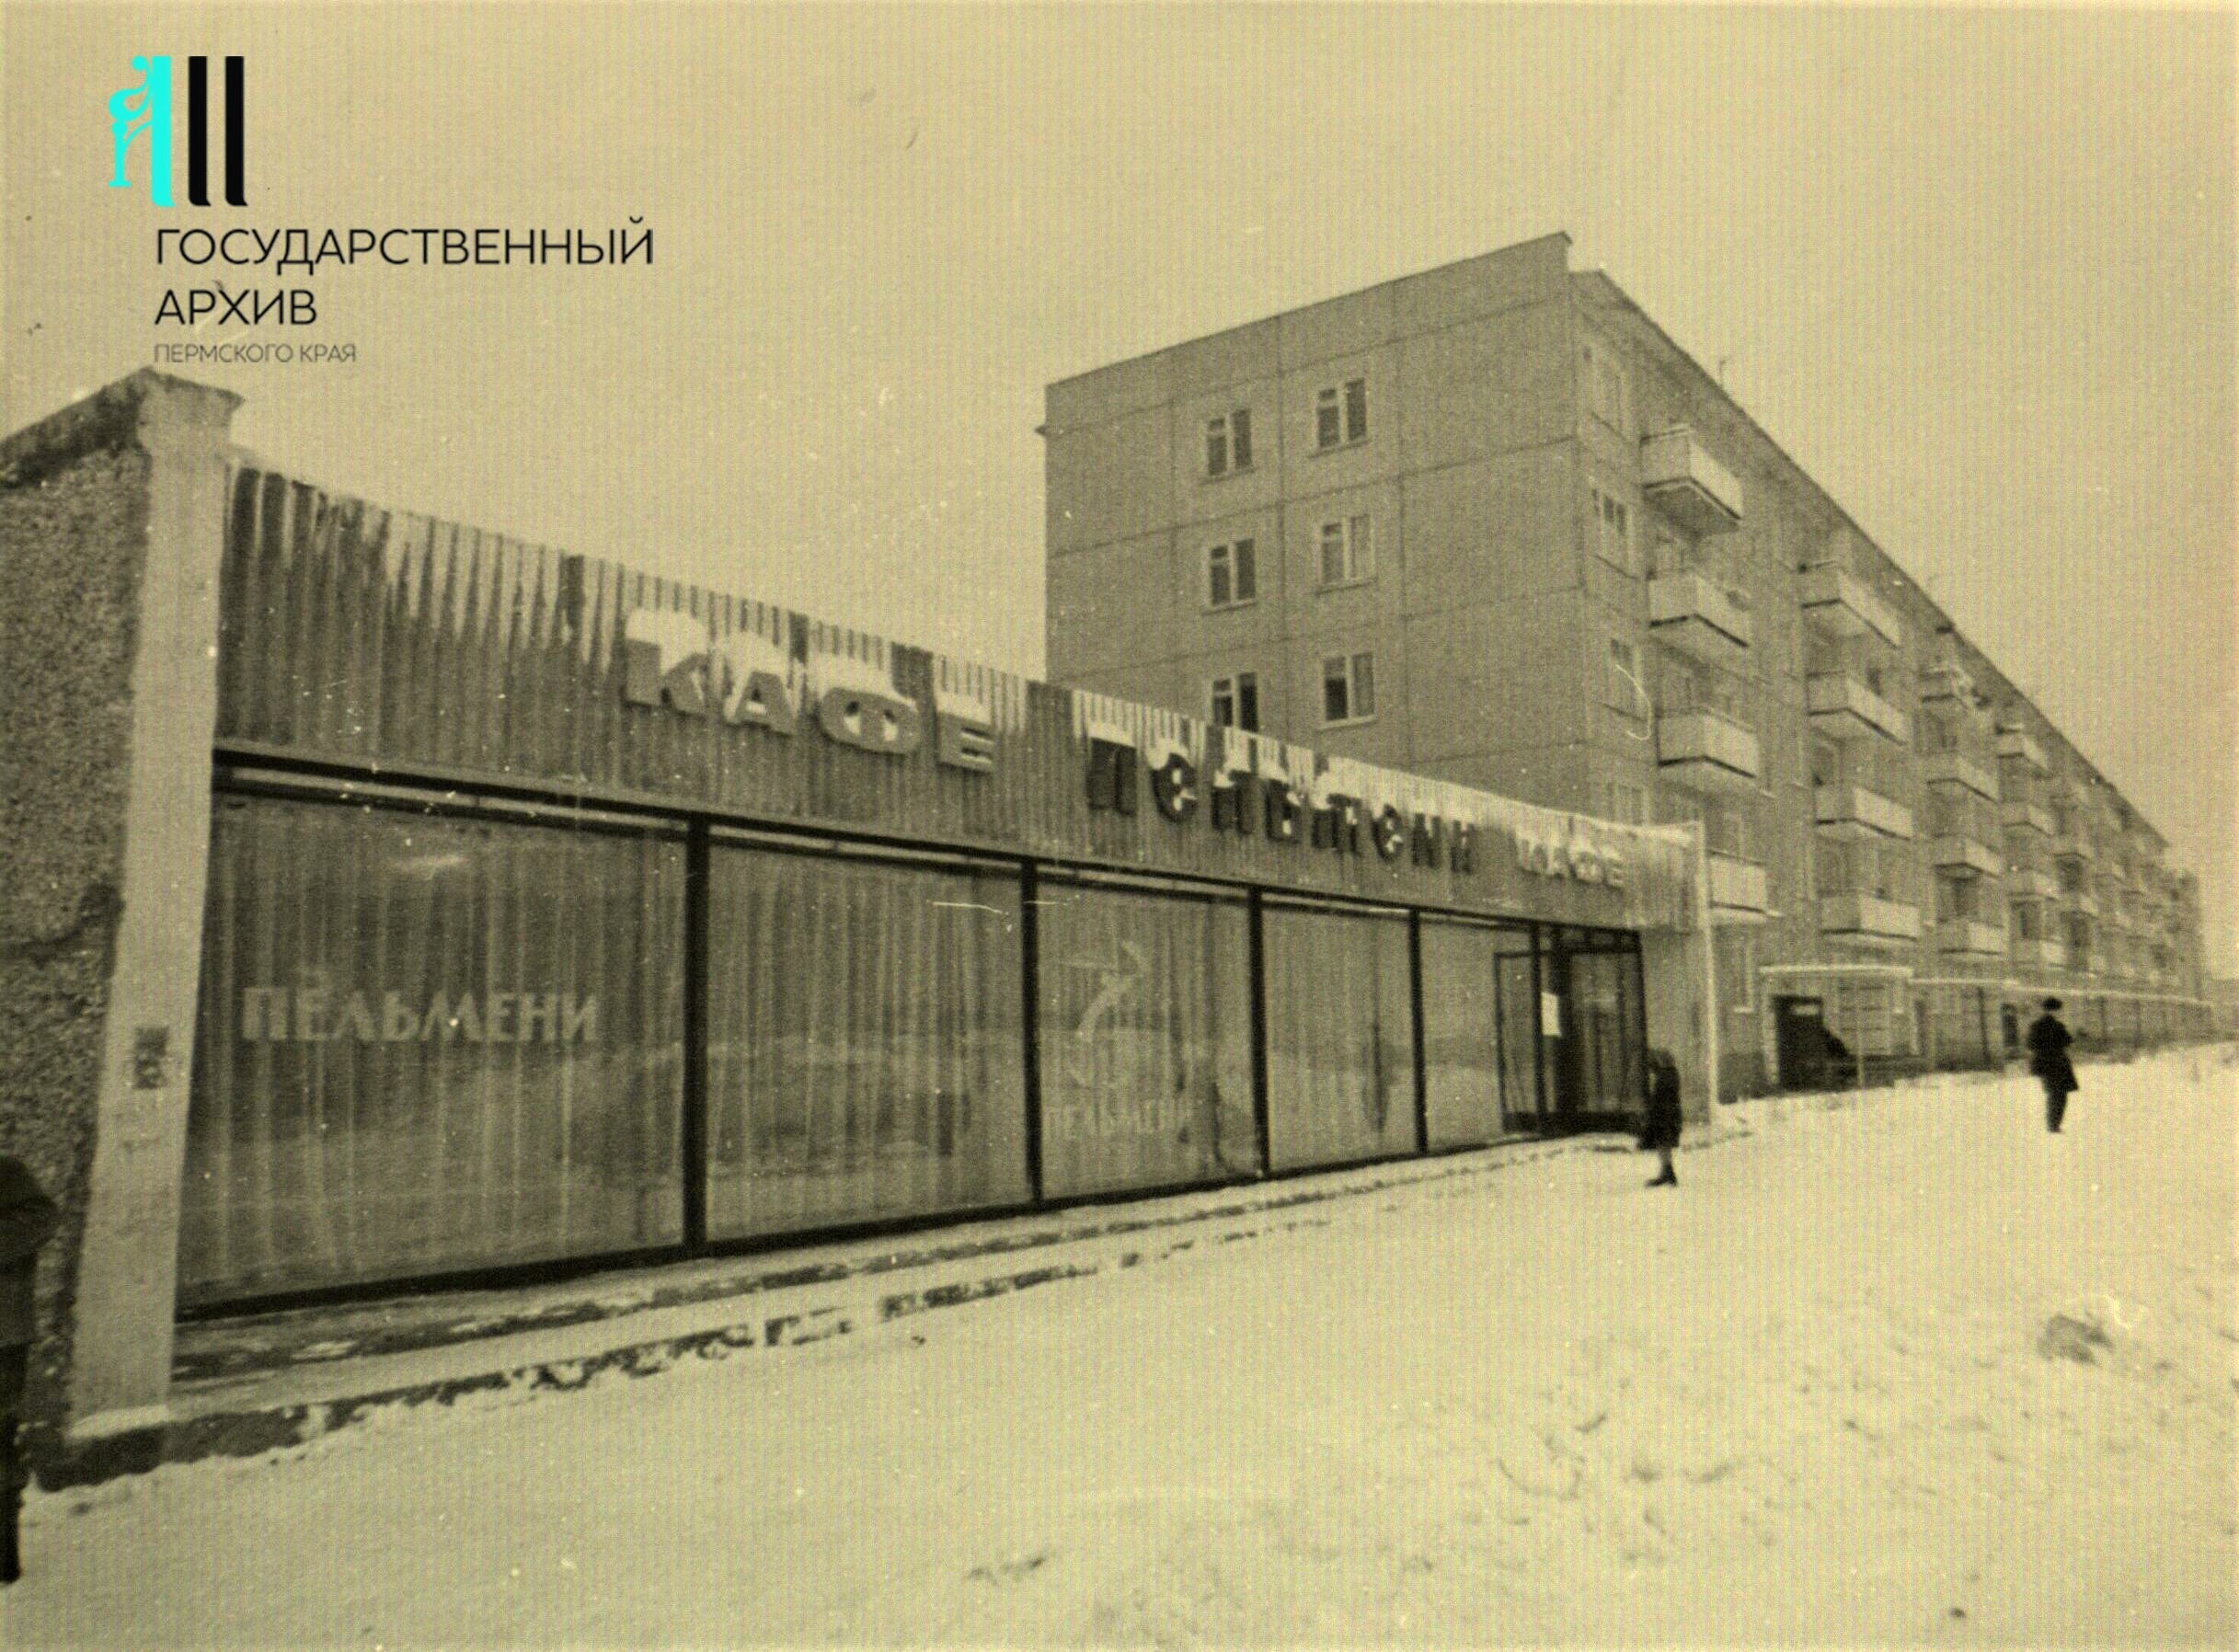 На Стахановской, 11, в Перми раньше располагалось кафе «Пельмени». Фото 1970-х годов.